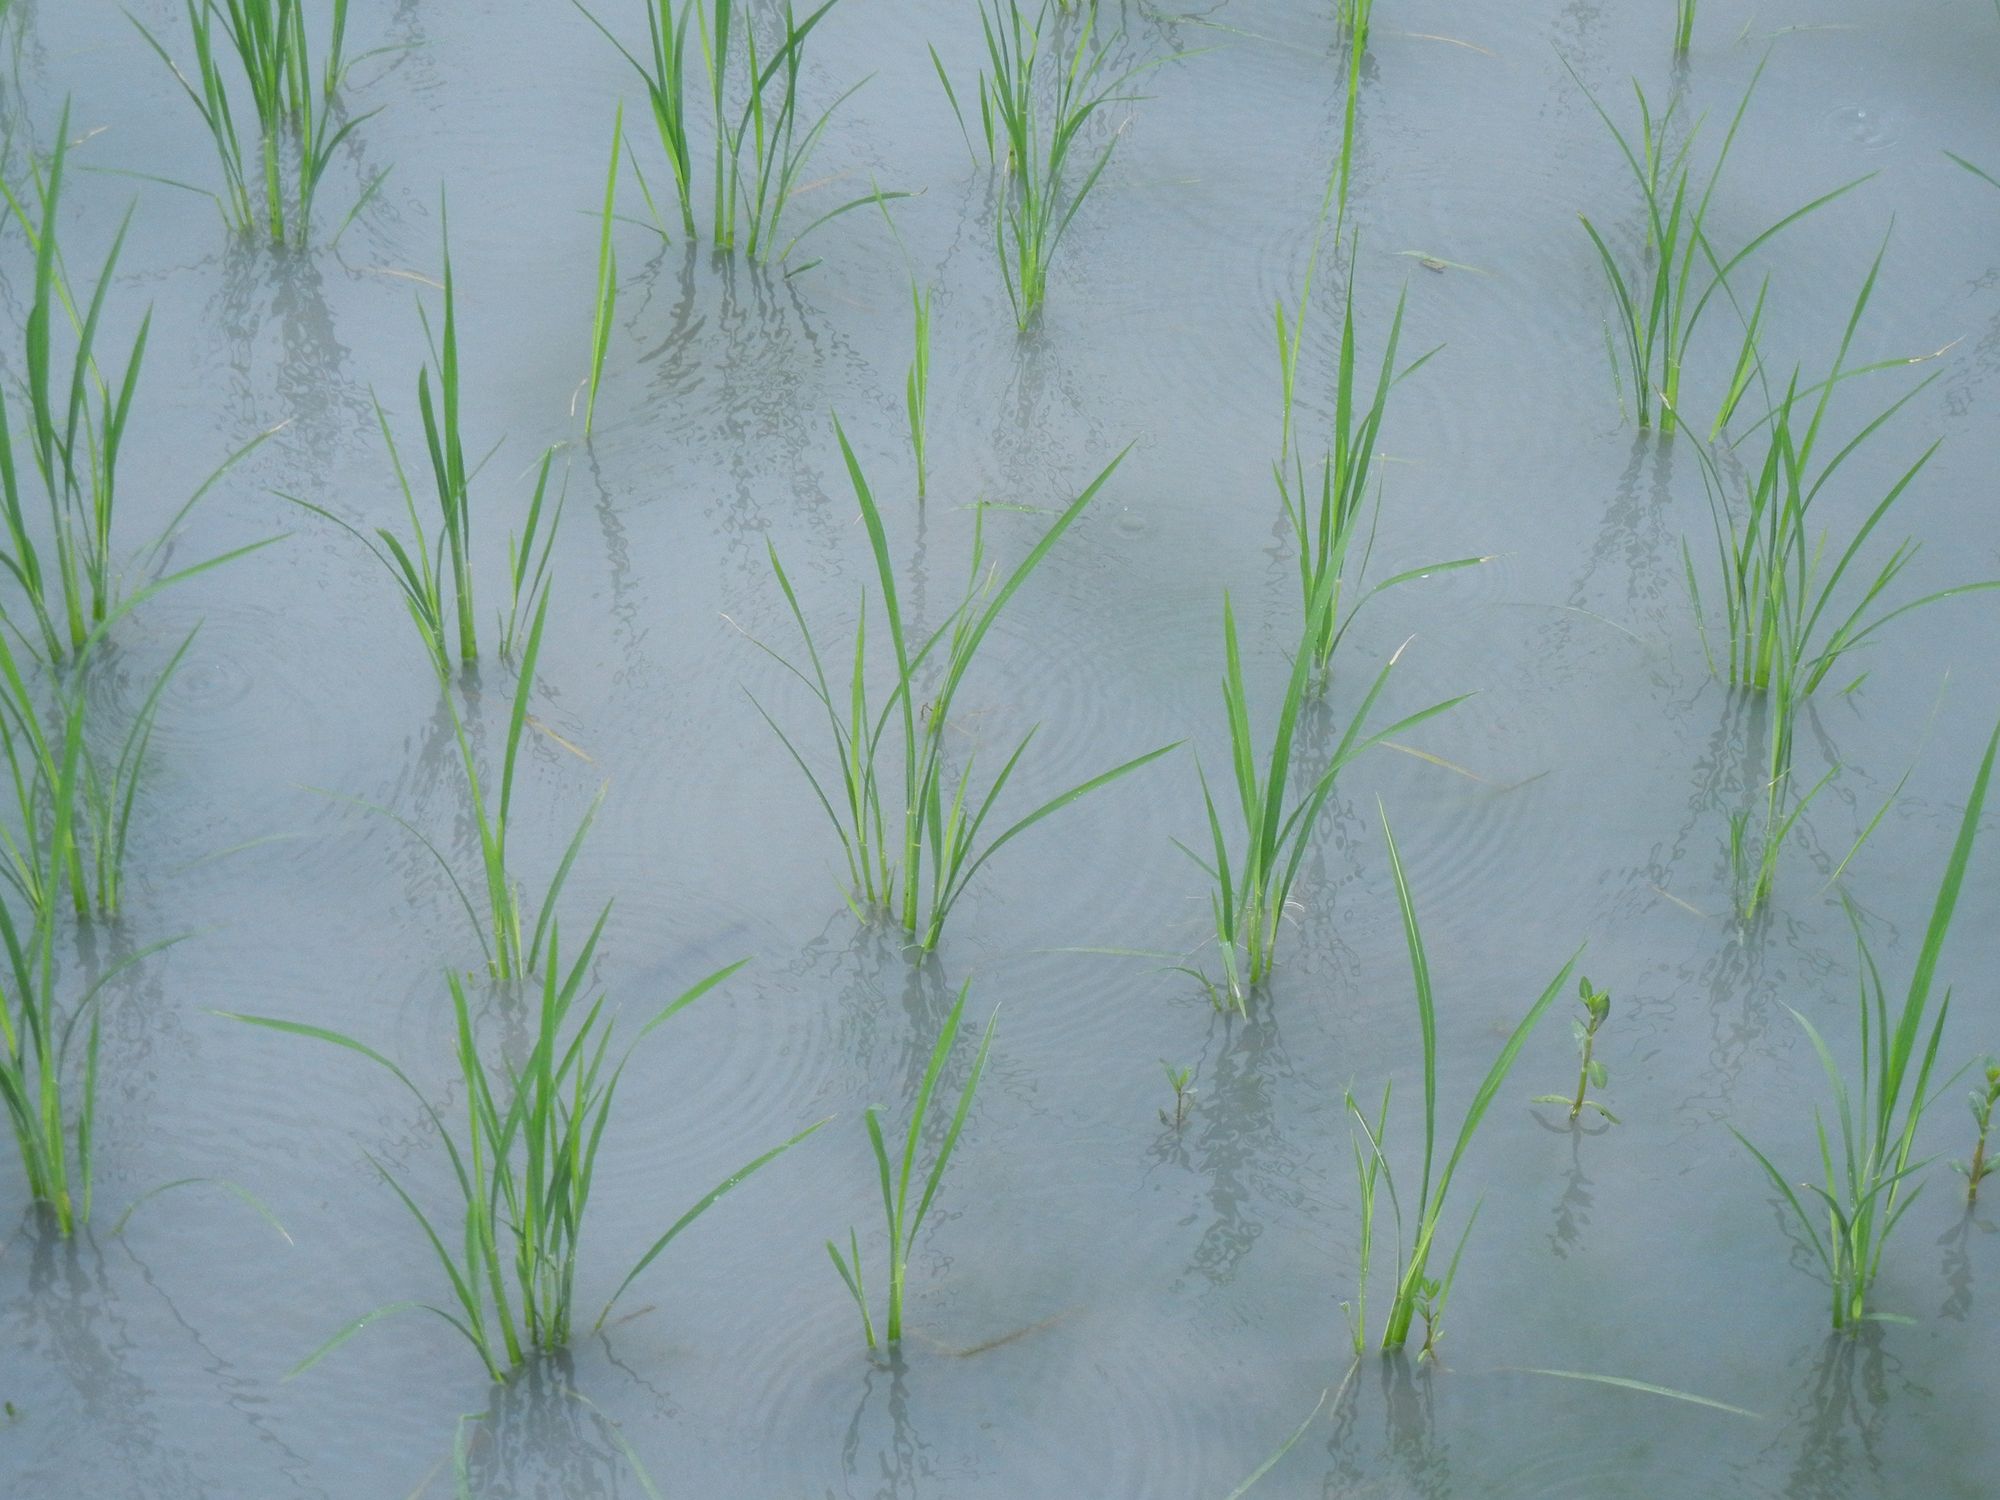 已插秧之稻田，建議可利用維持 3 公分水位的放流灌溉保